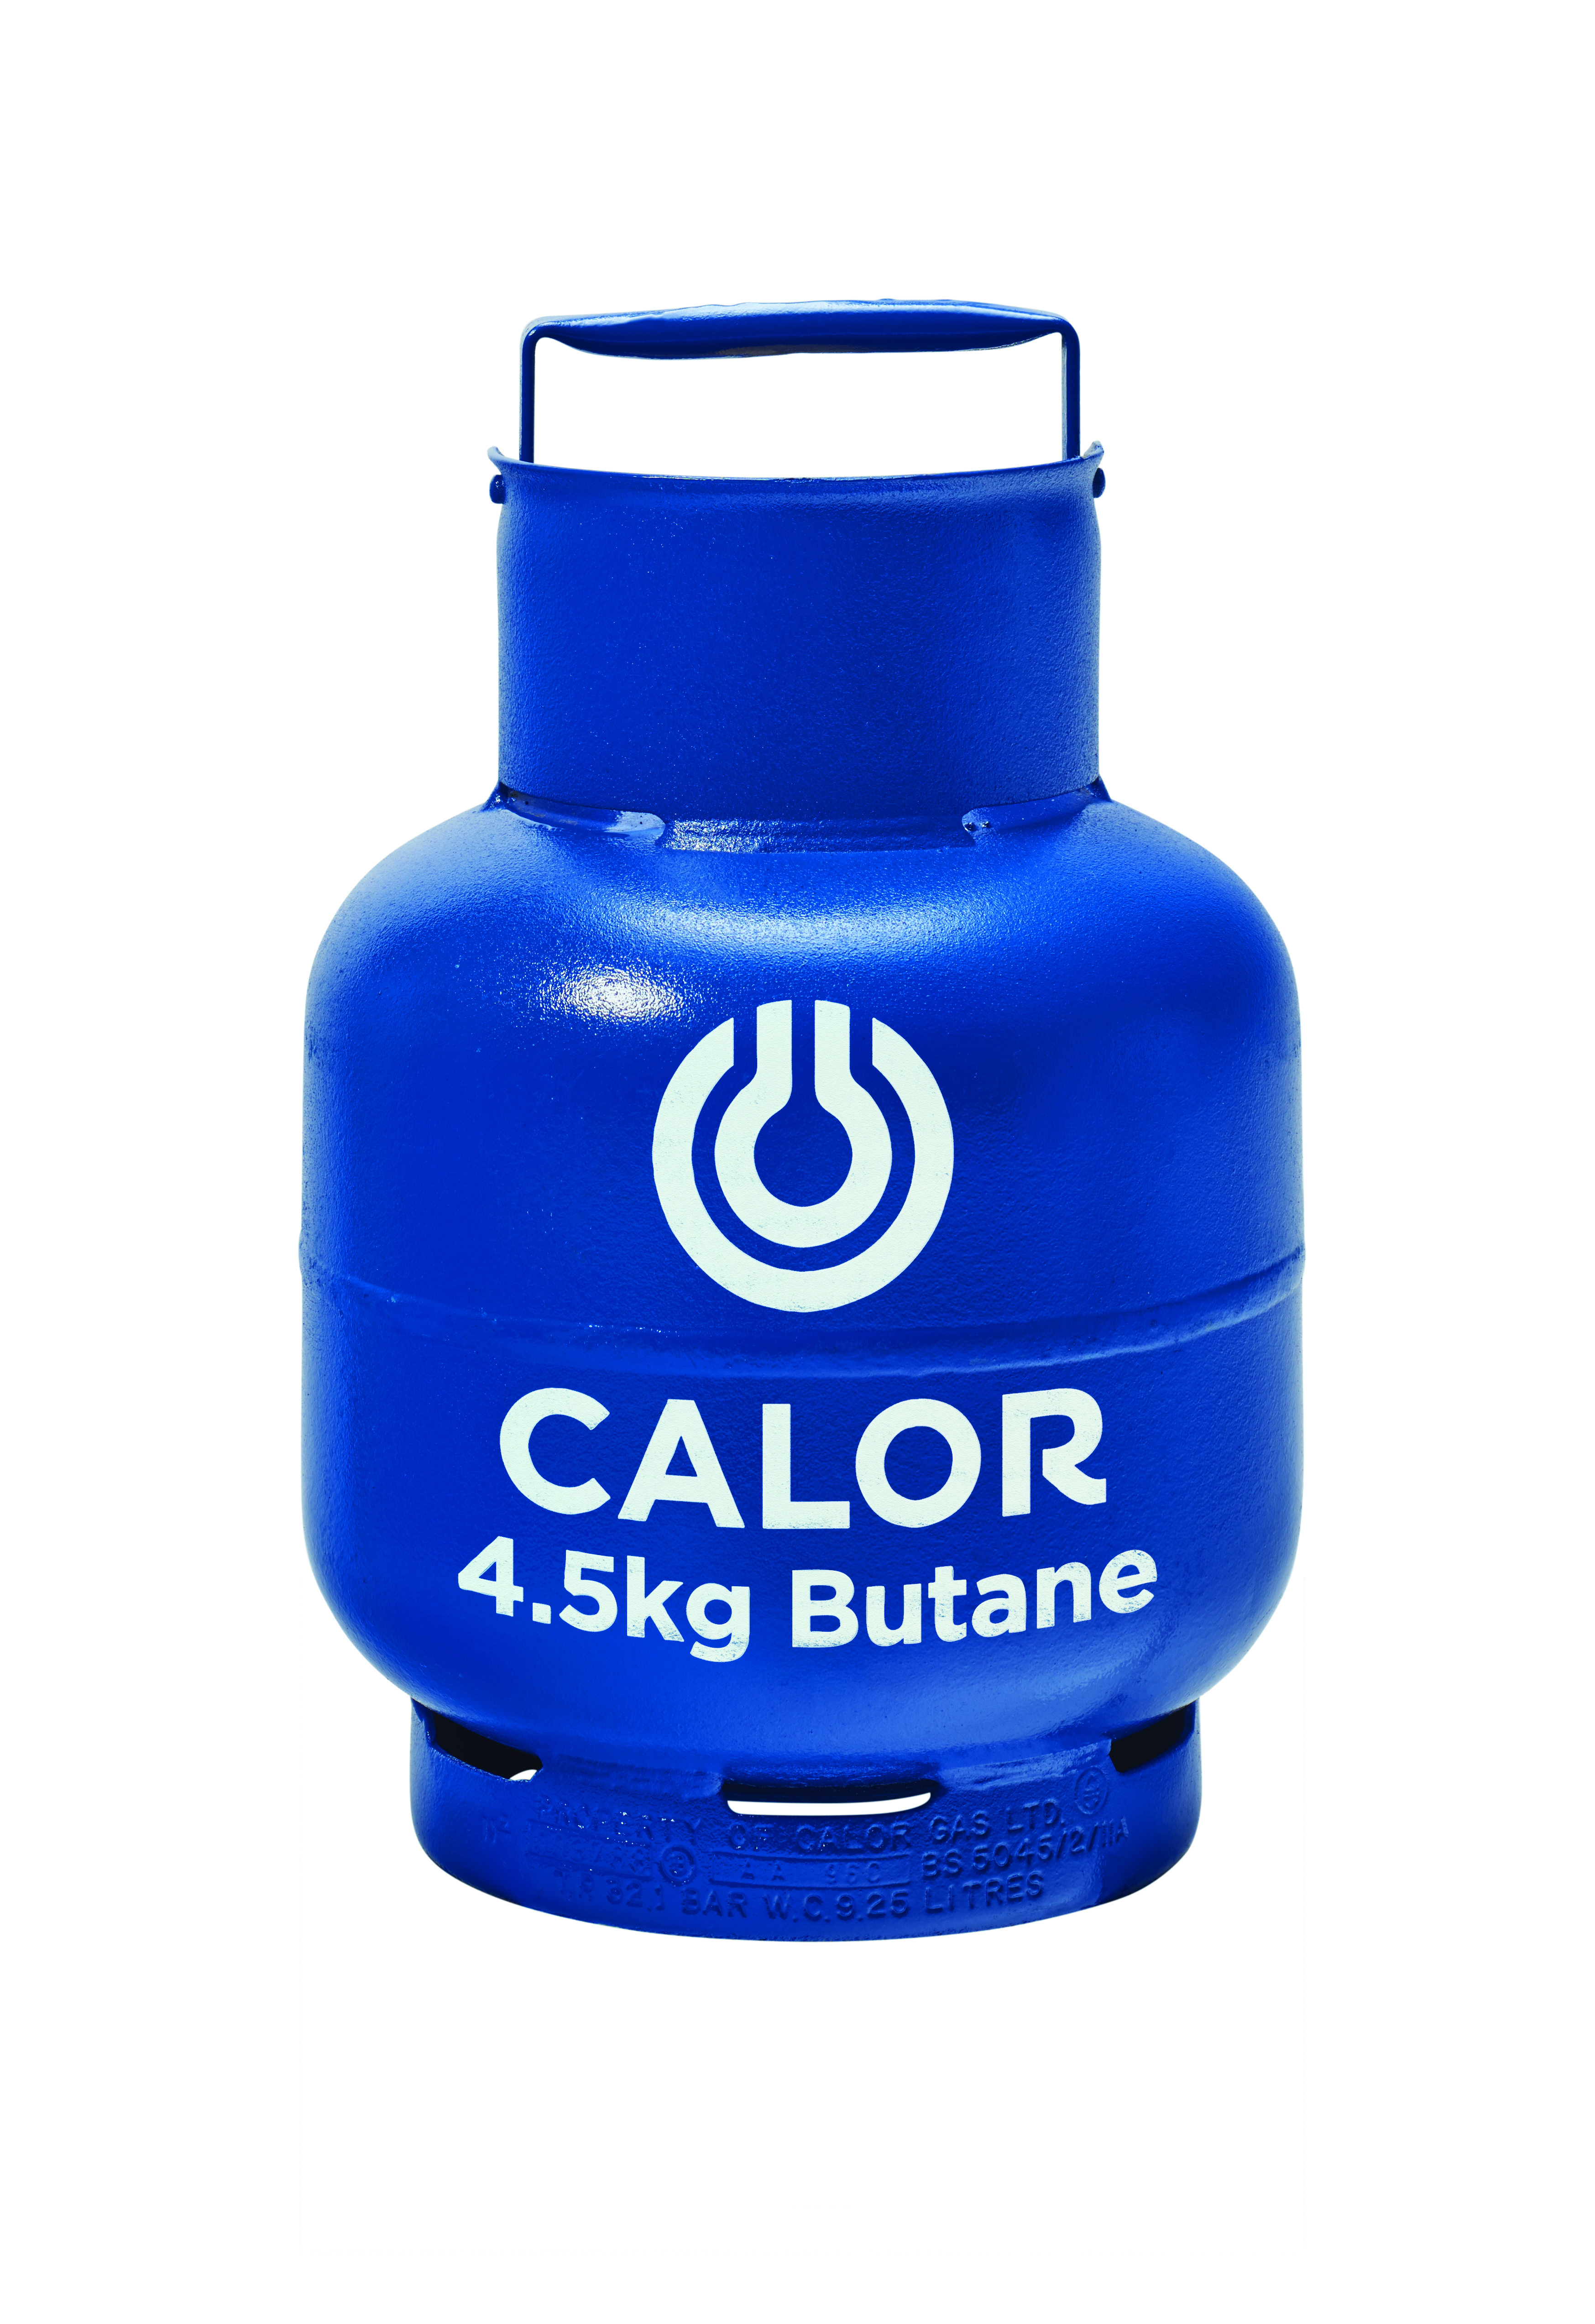 4.5kg Butane Calor Gas Bottle